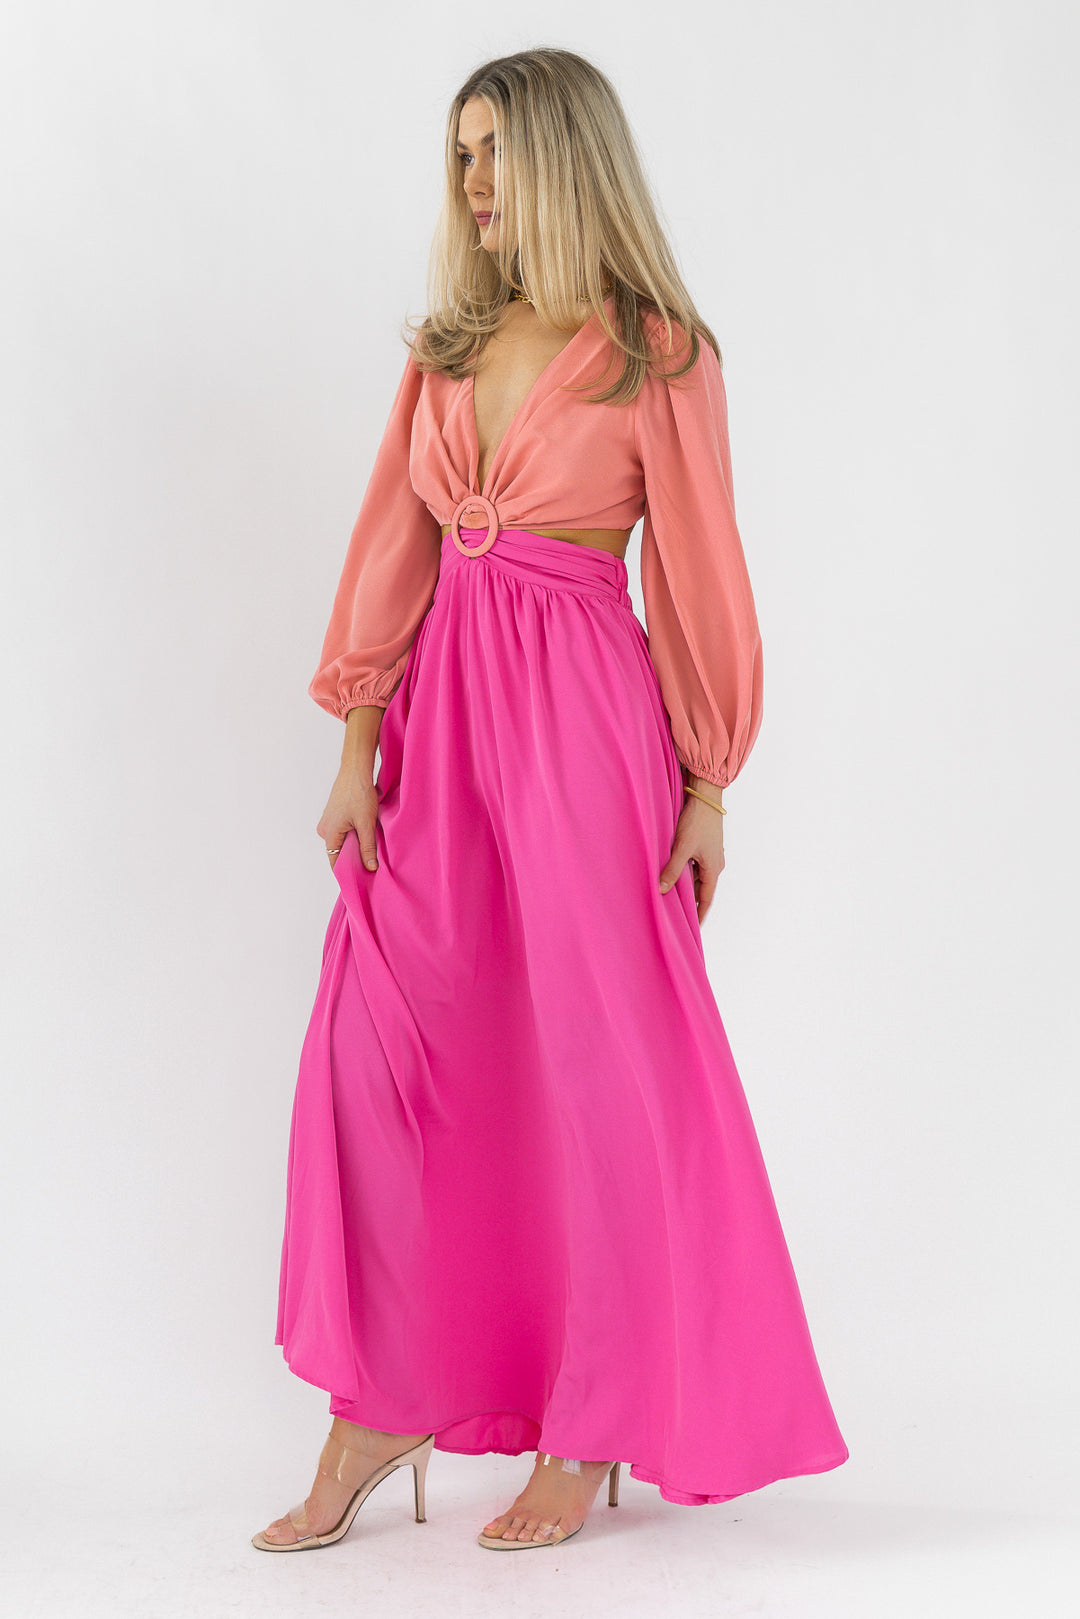 Sienna Peach Pink Maxi Dress